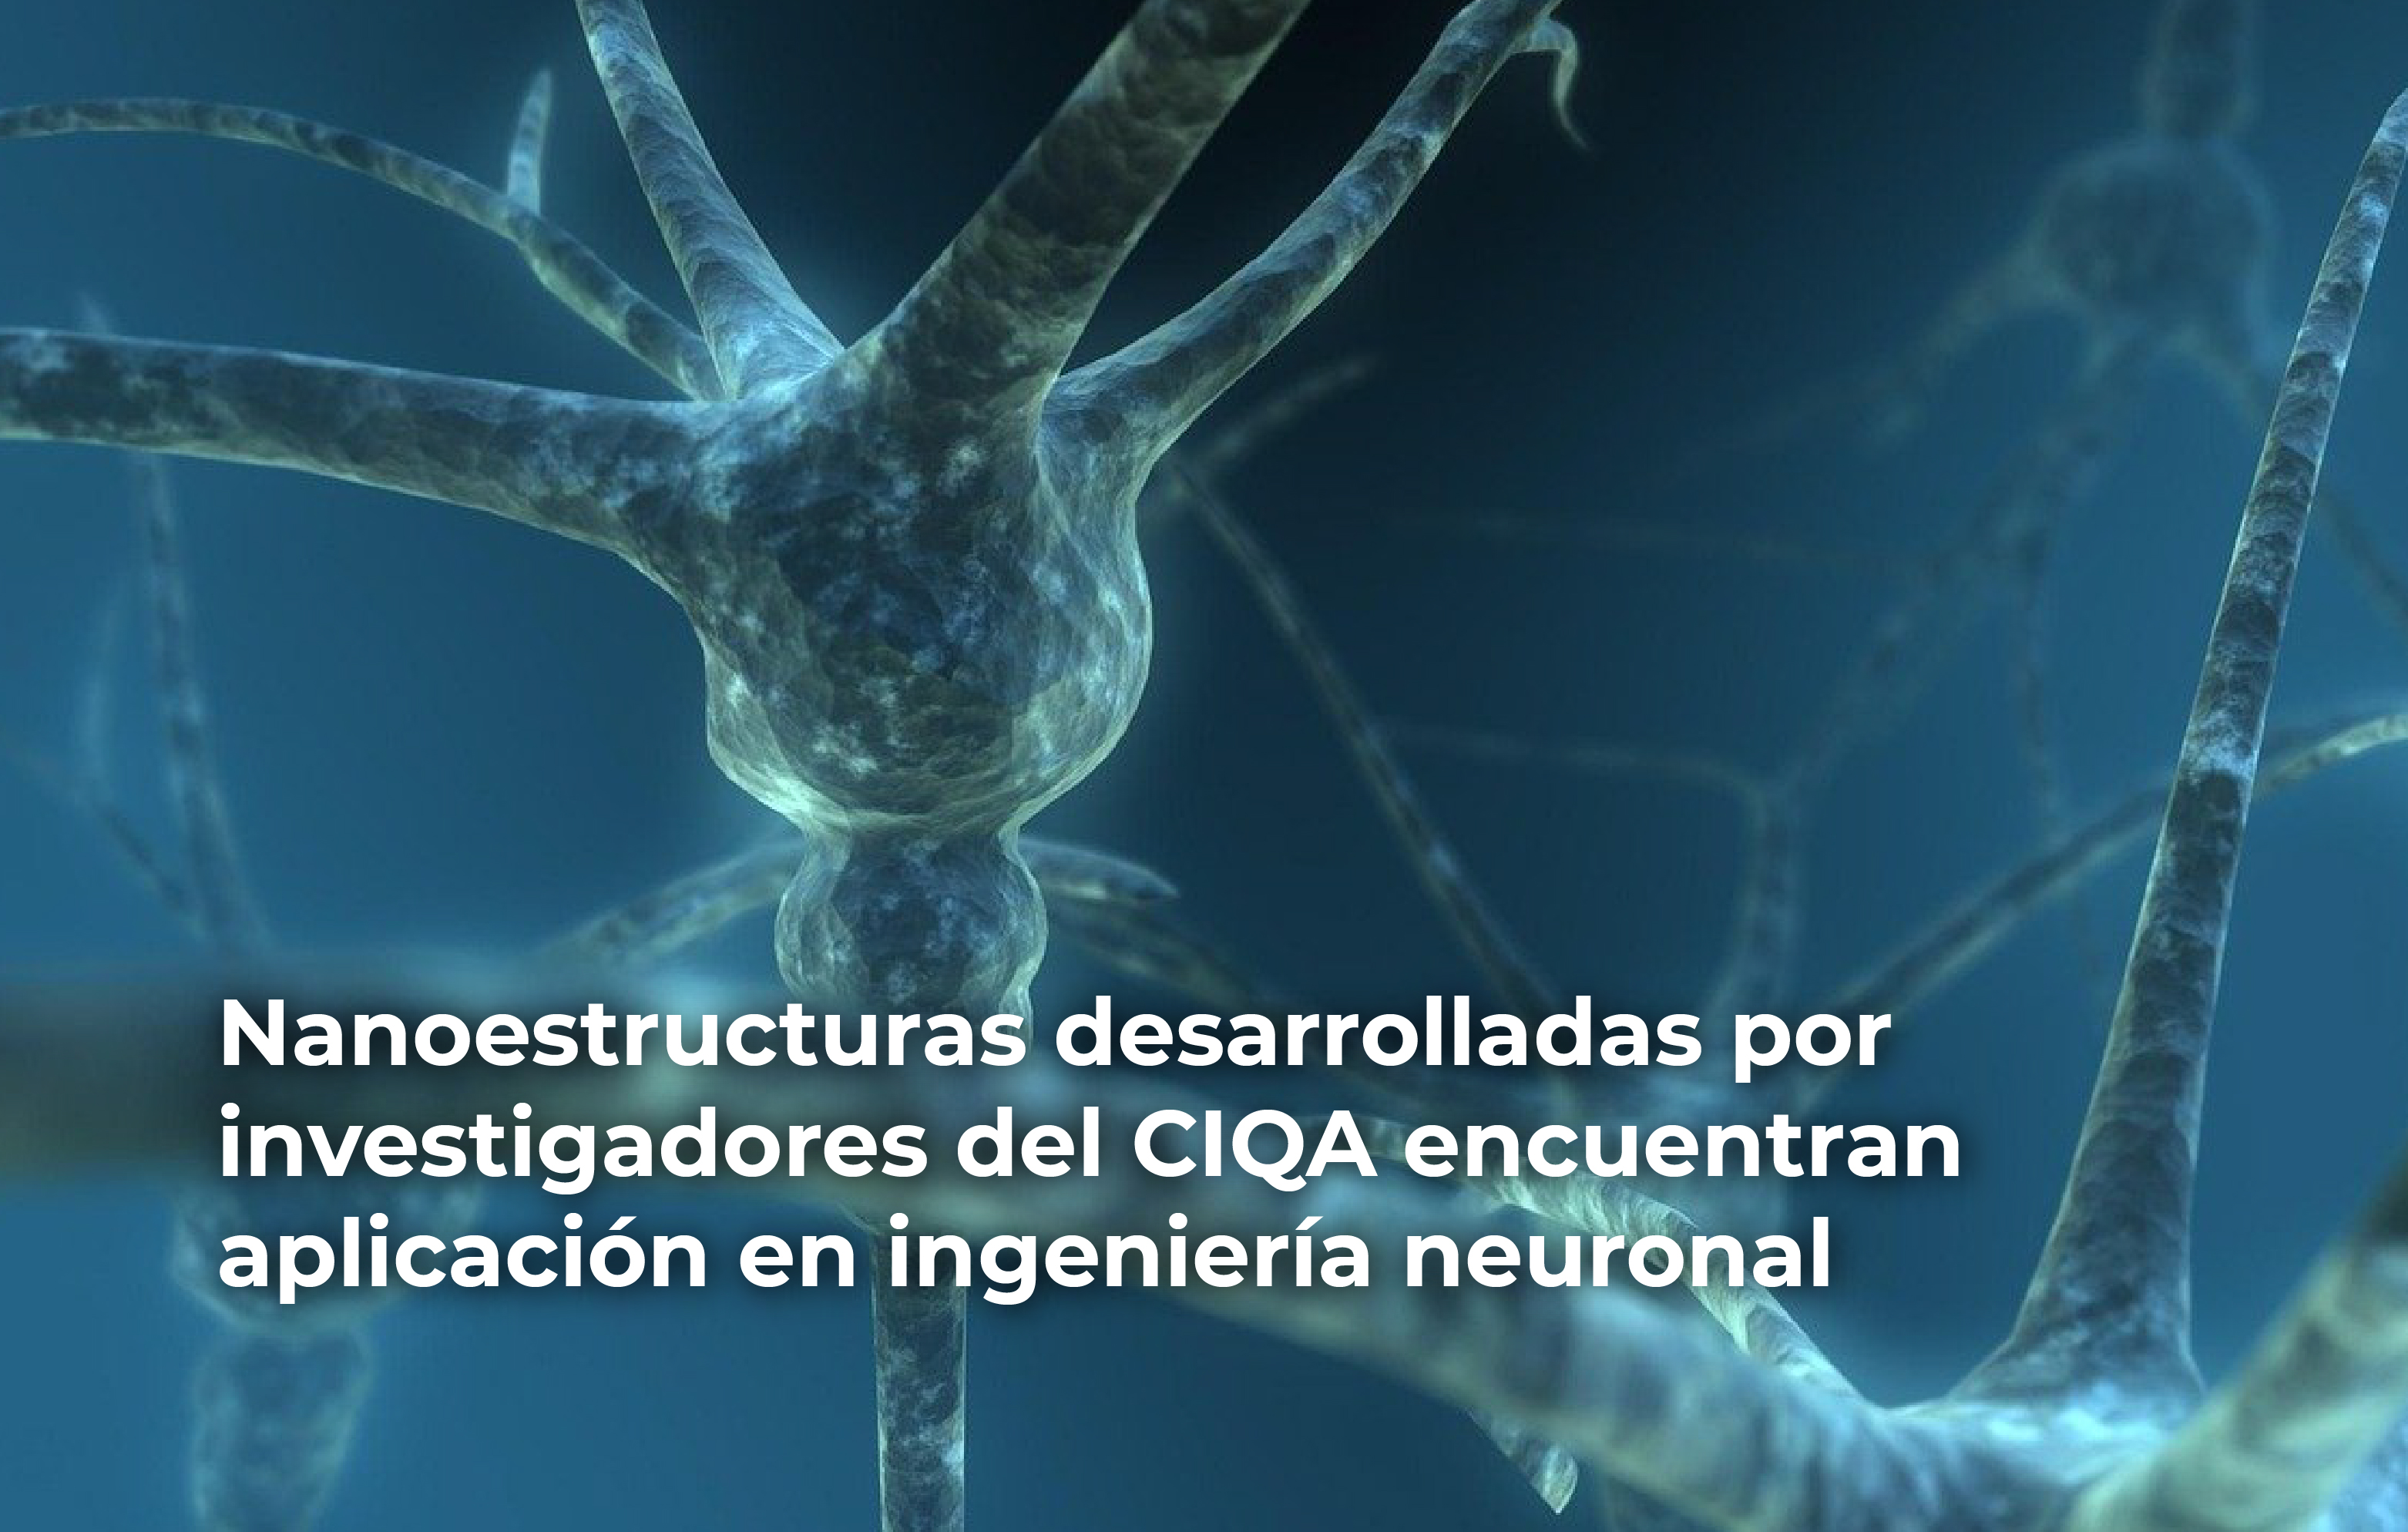 Nanoestructuras desarrolladas por las y los investigadores del CIQA encuentran aplicación en ingeniería neuronal